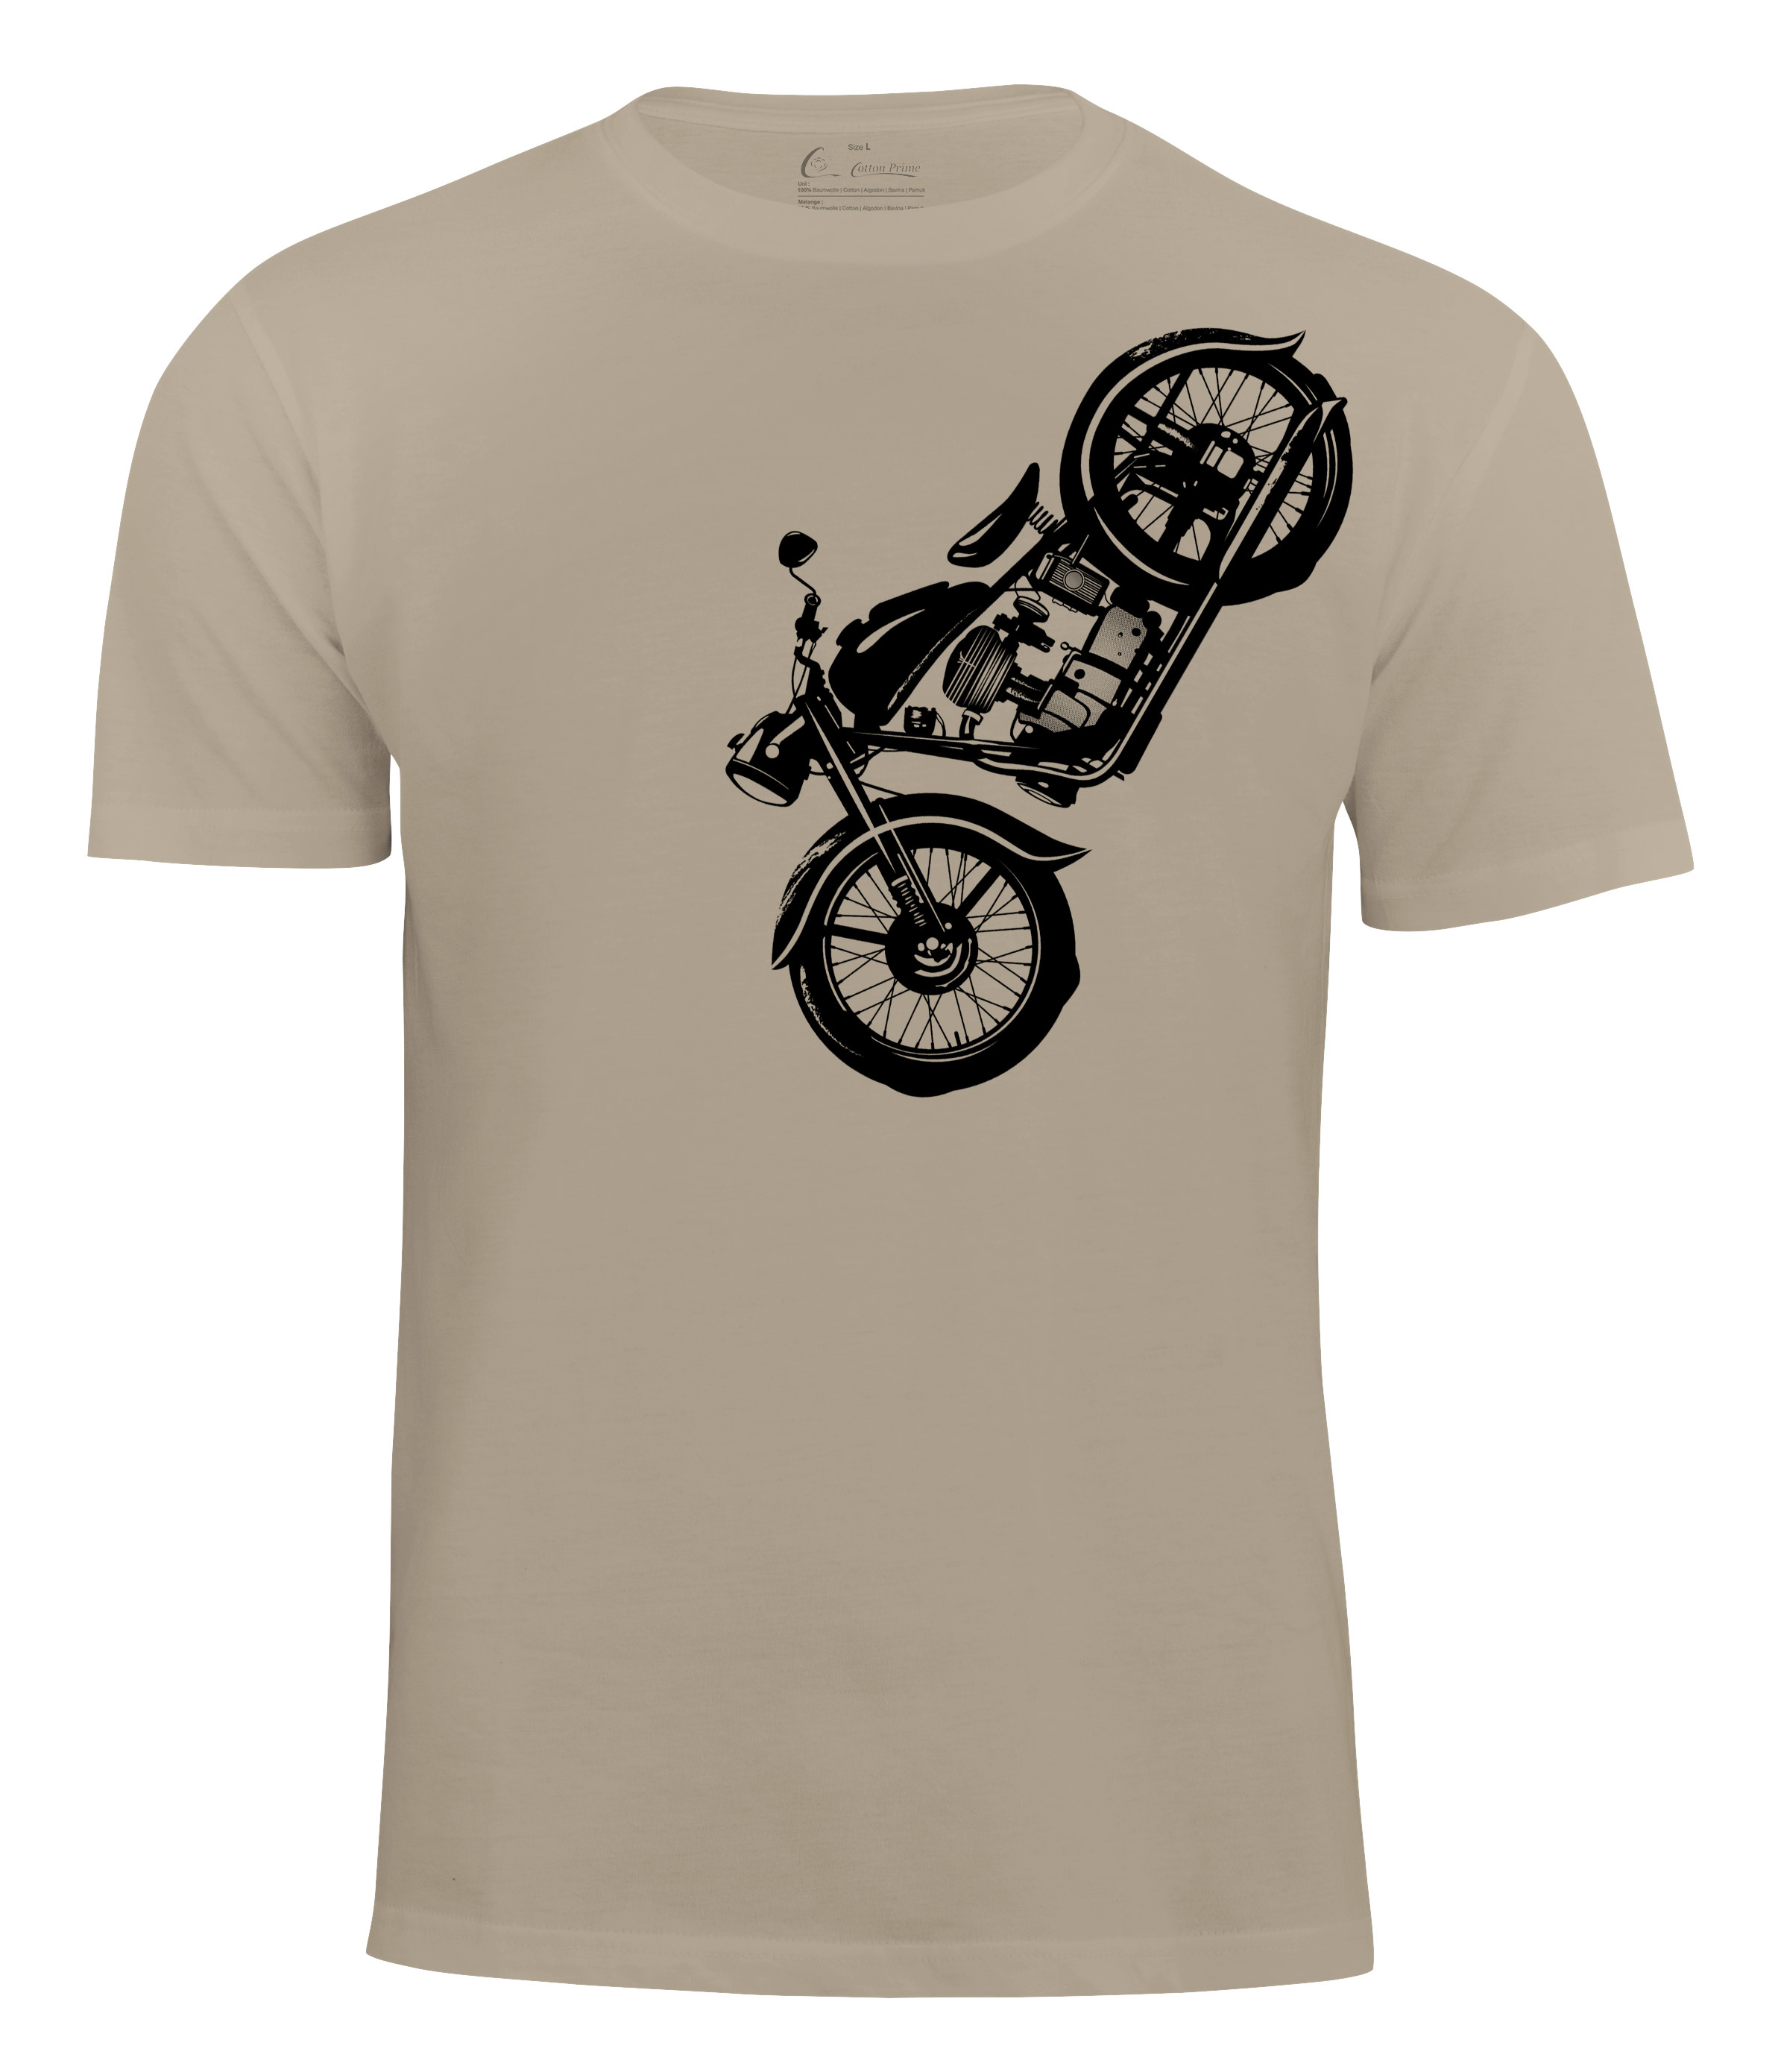 Футболка Cotton Prime Vintage Motorcycle, бежевый